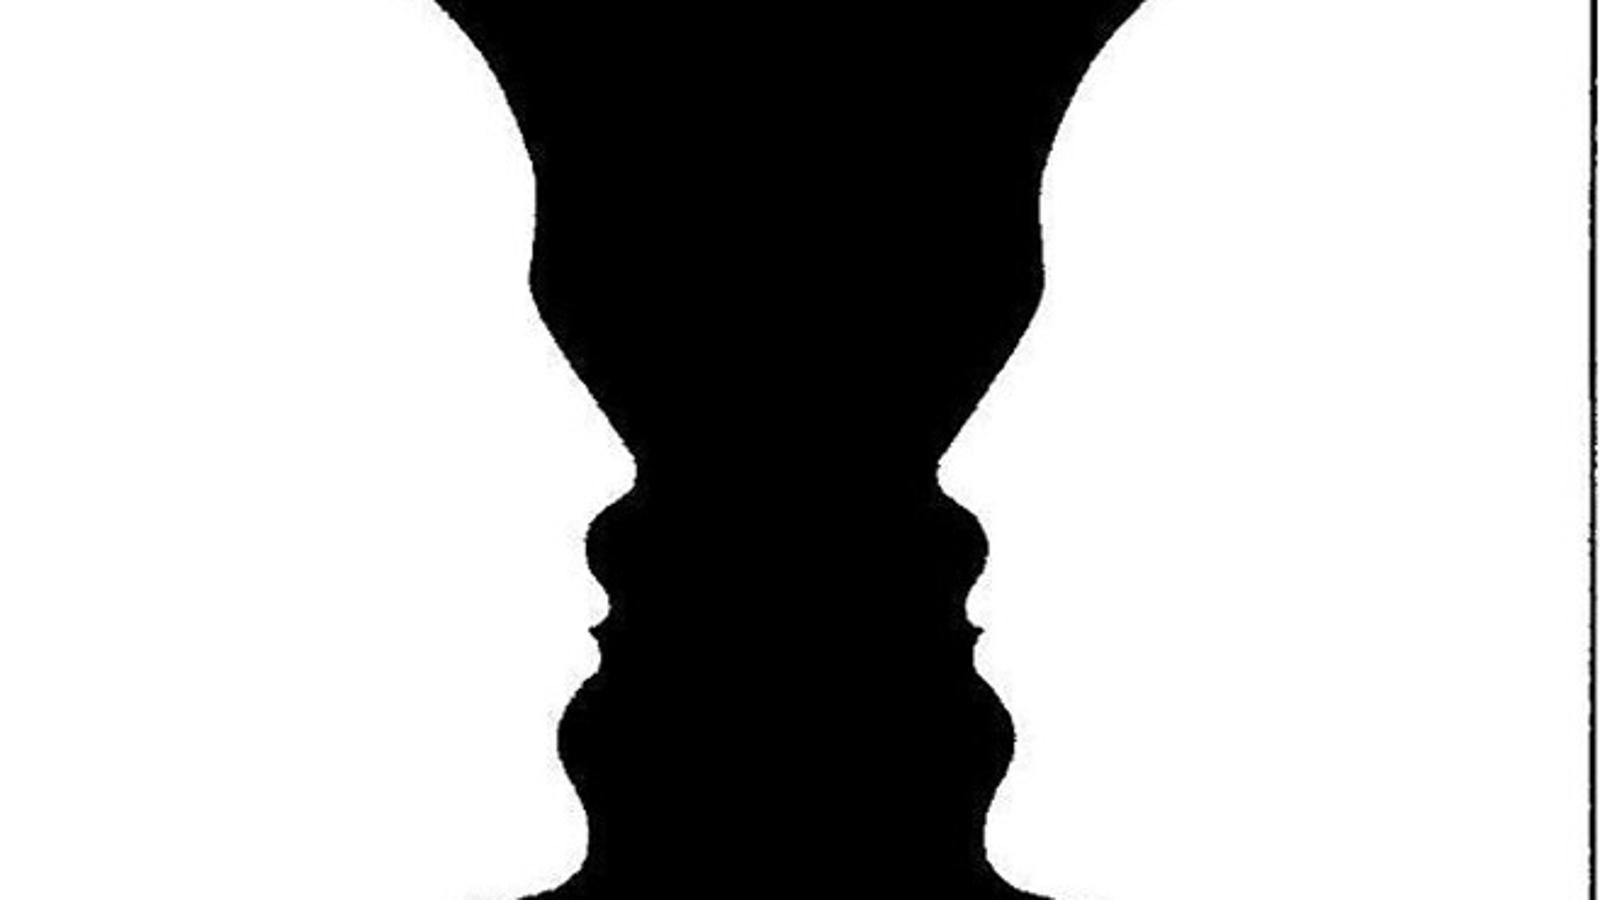 Što trenutno vidite? Vazu ili dva lica?